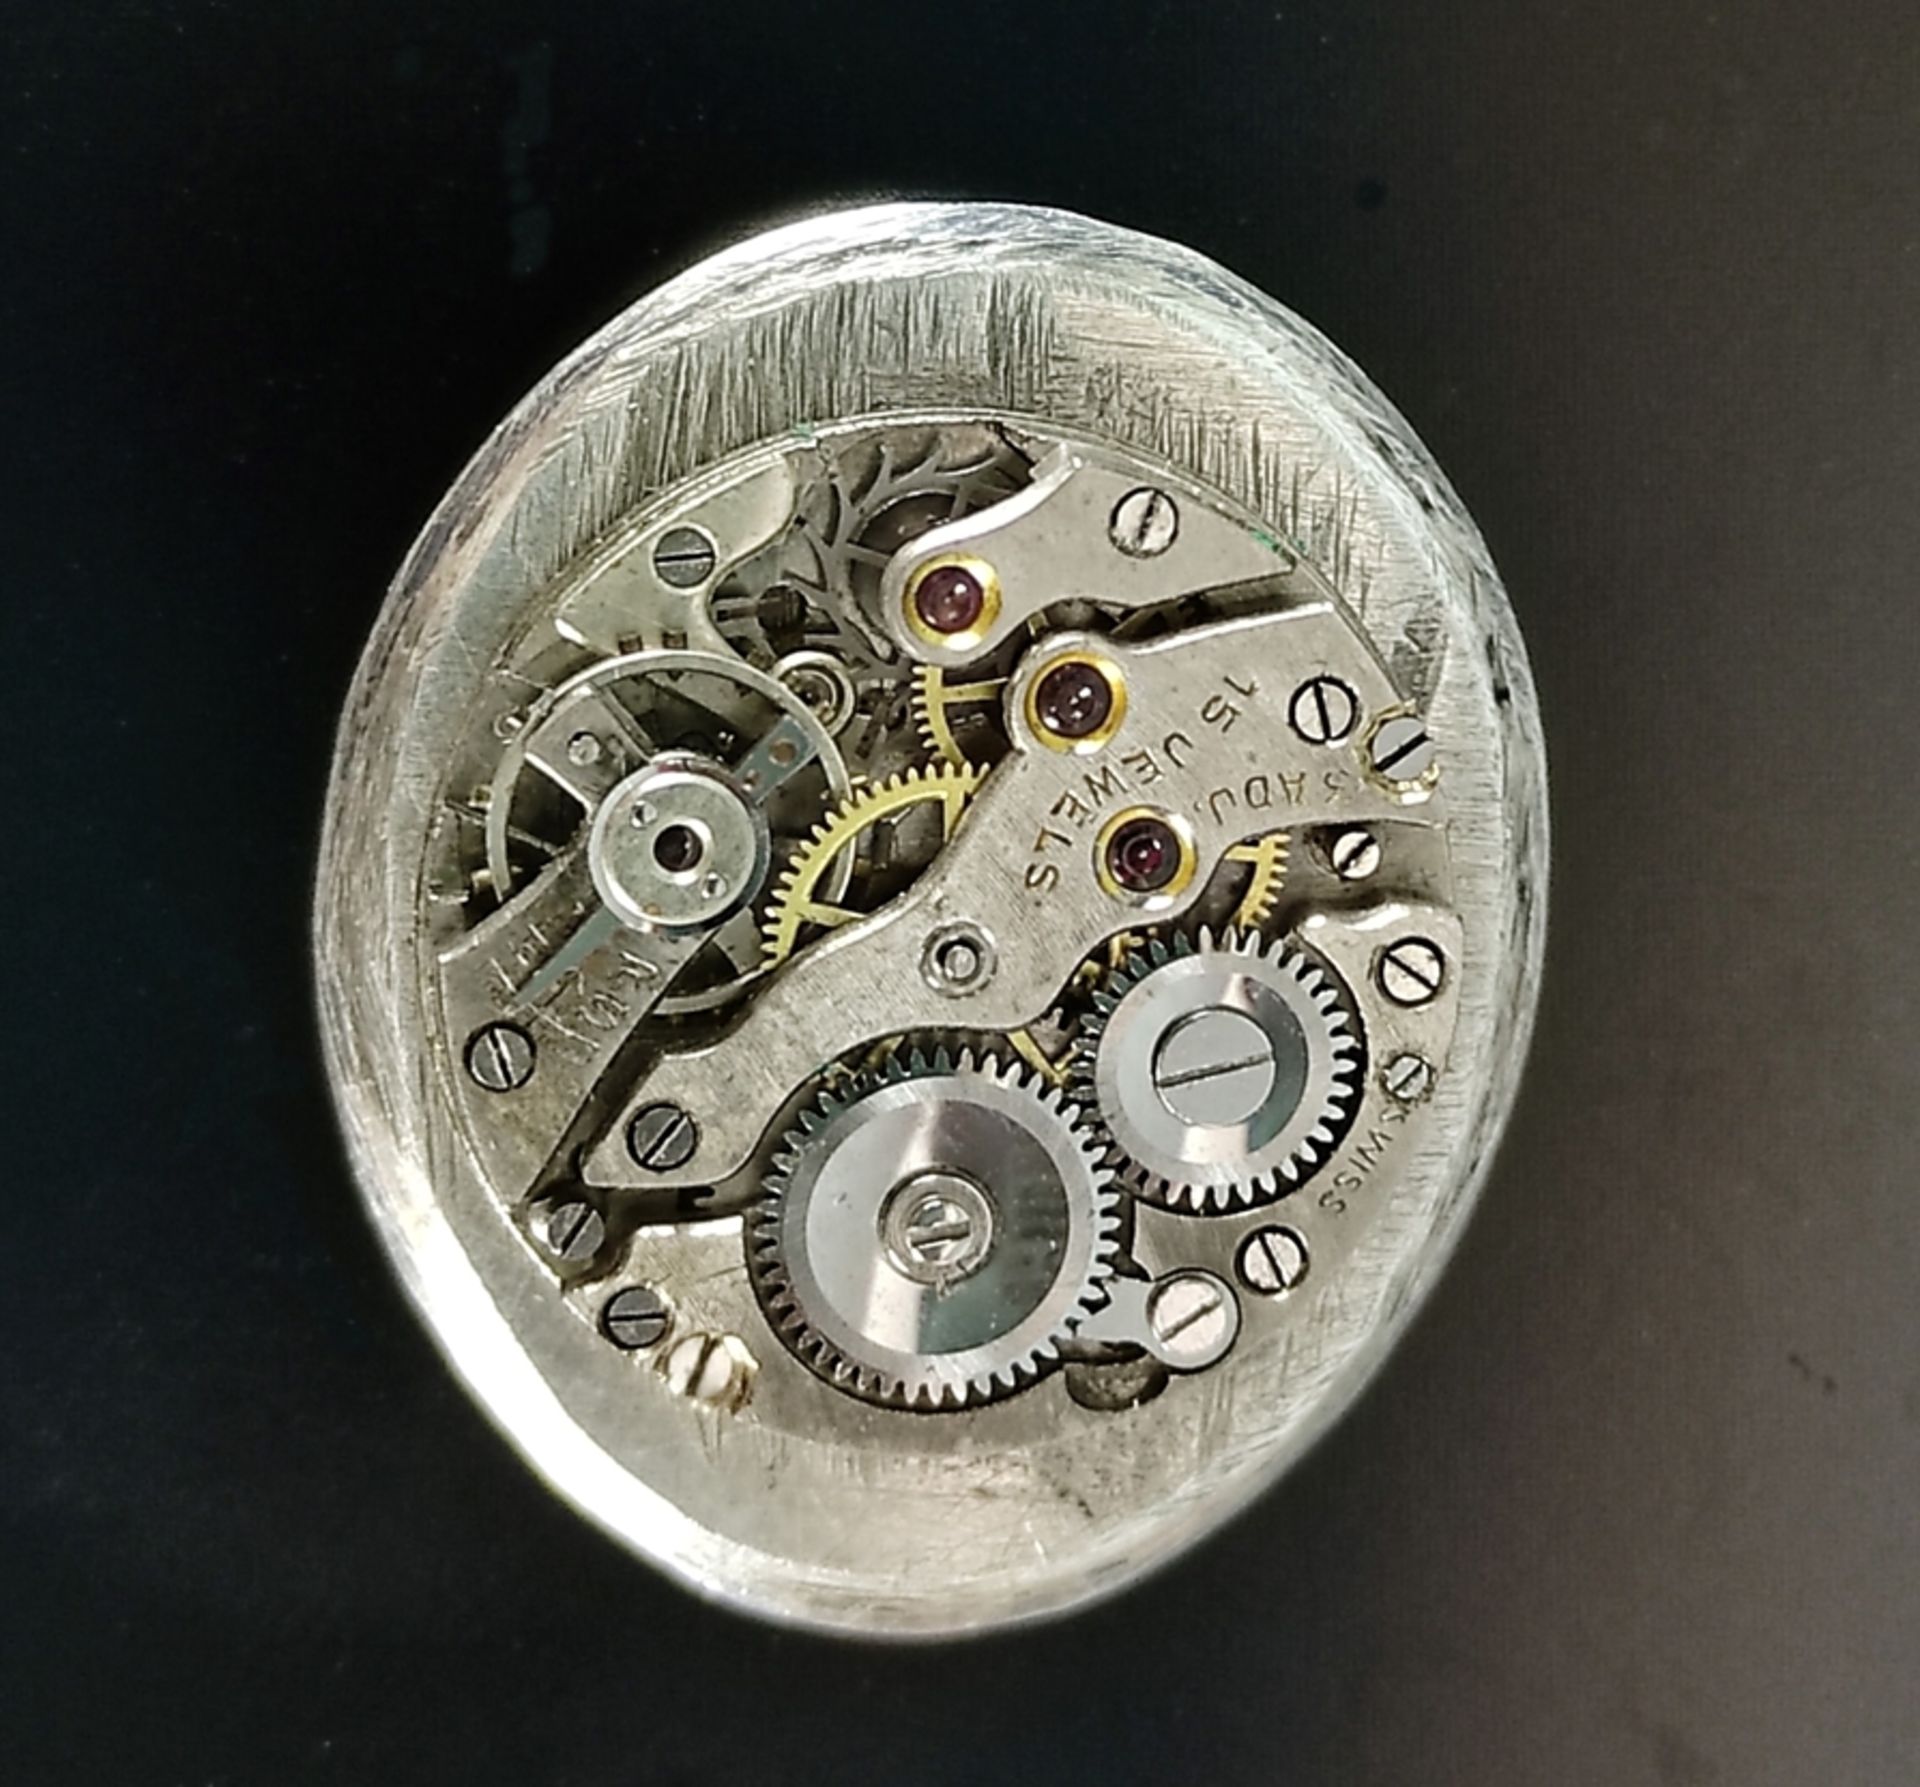 Taschenuhr/Schädeluhr, Craig Compton, in Form eines Schädels, aufklappbar, innen das Uhrwerk, Schäd - Bild 5 aus 7